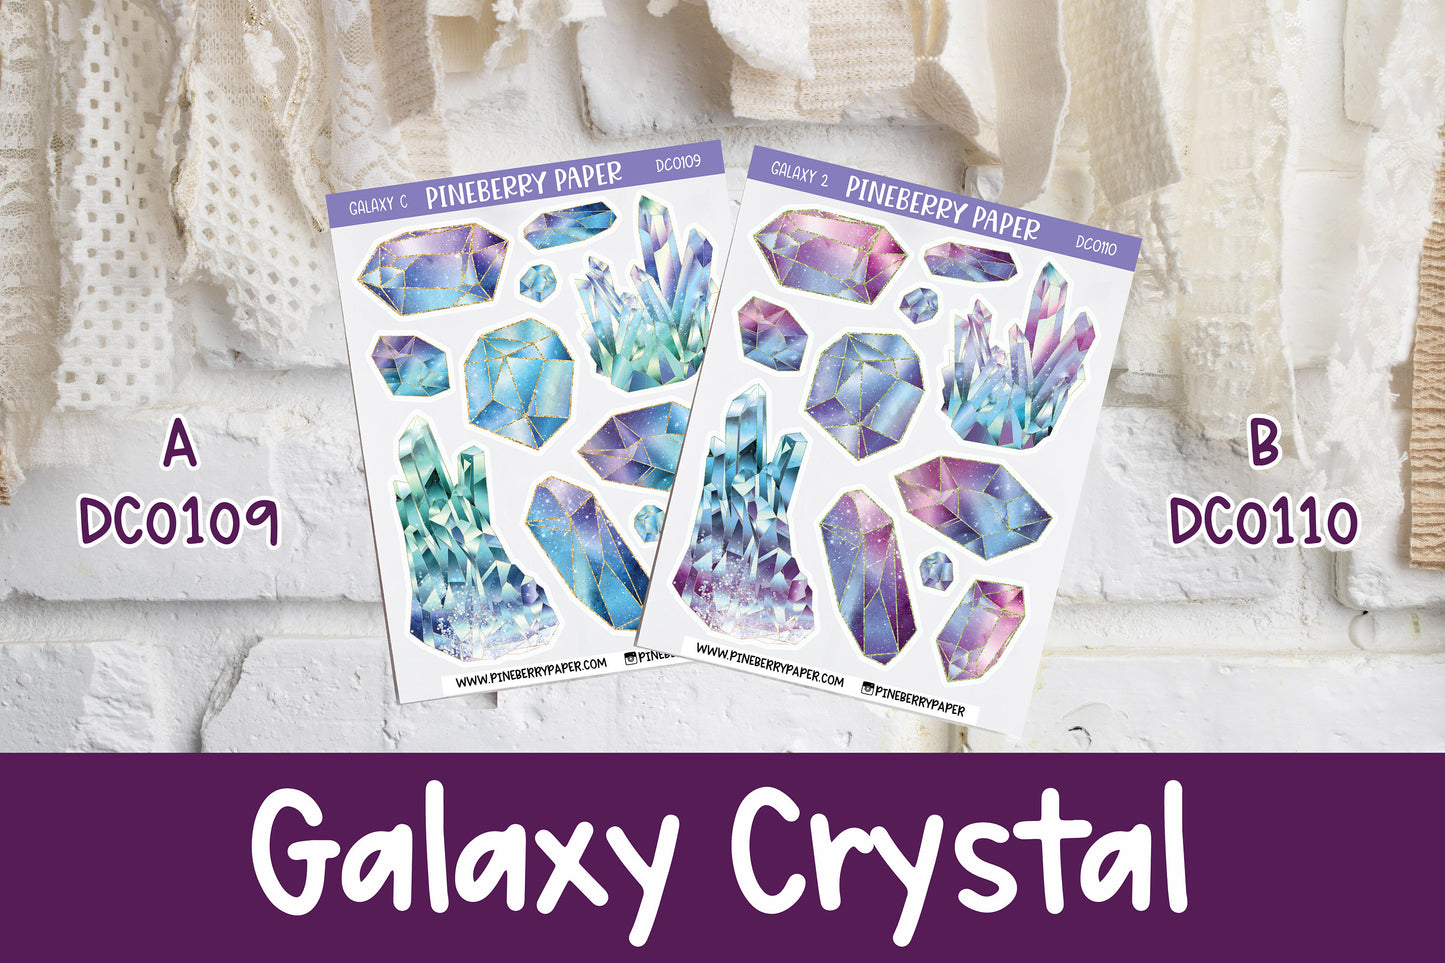 Galaxy Crystals